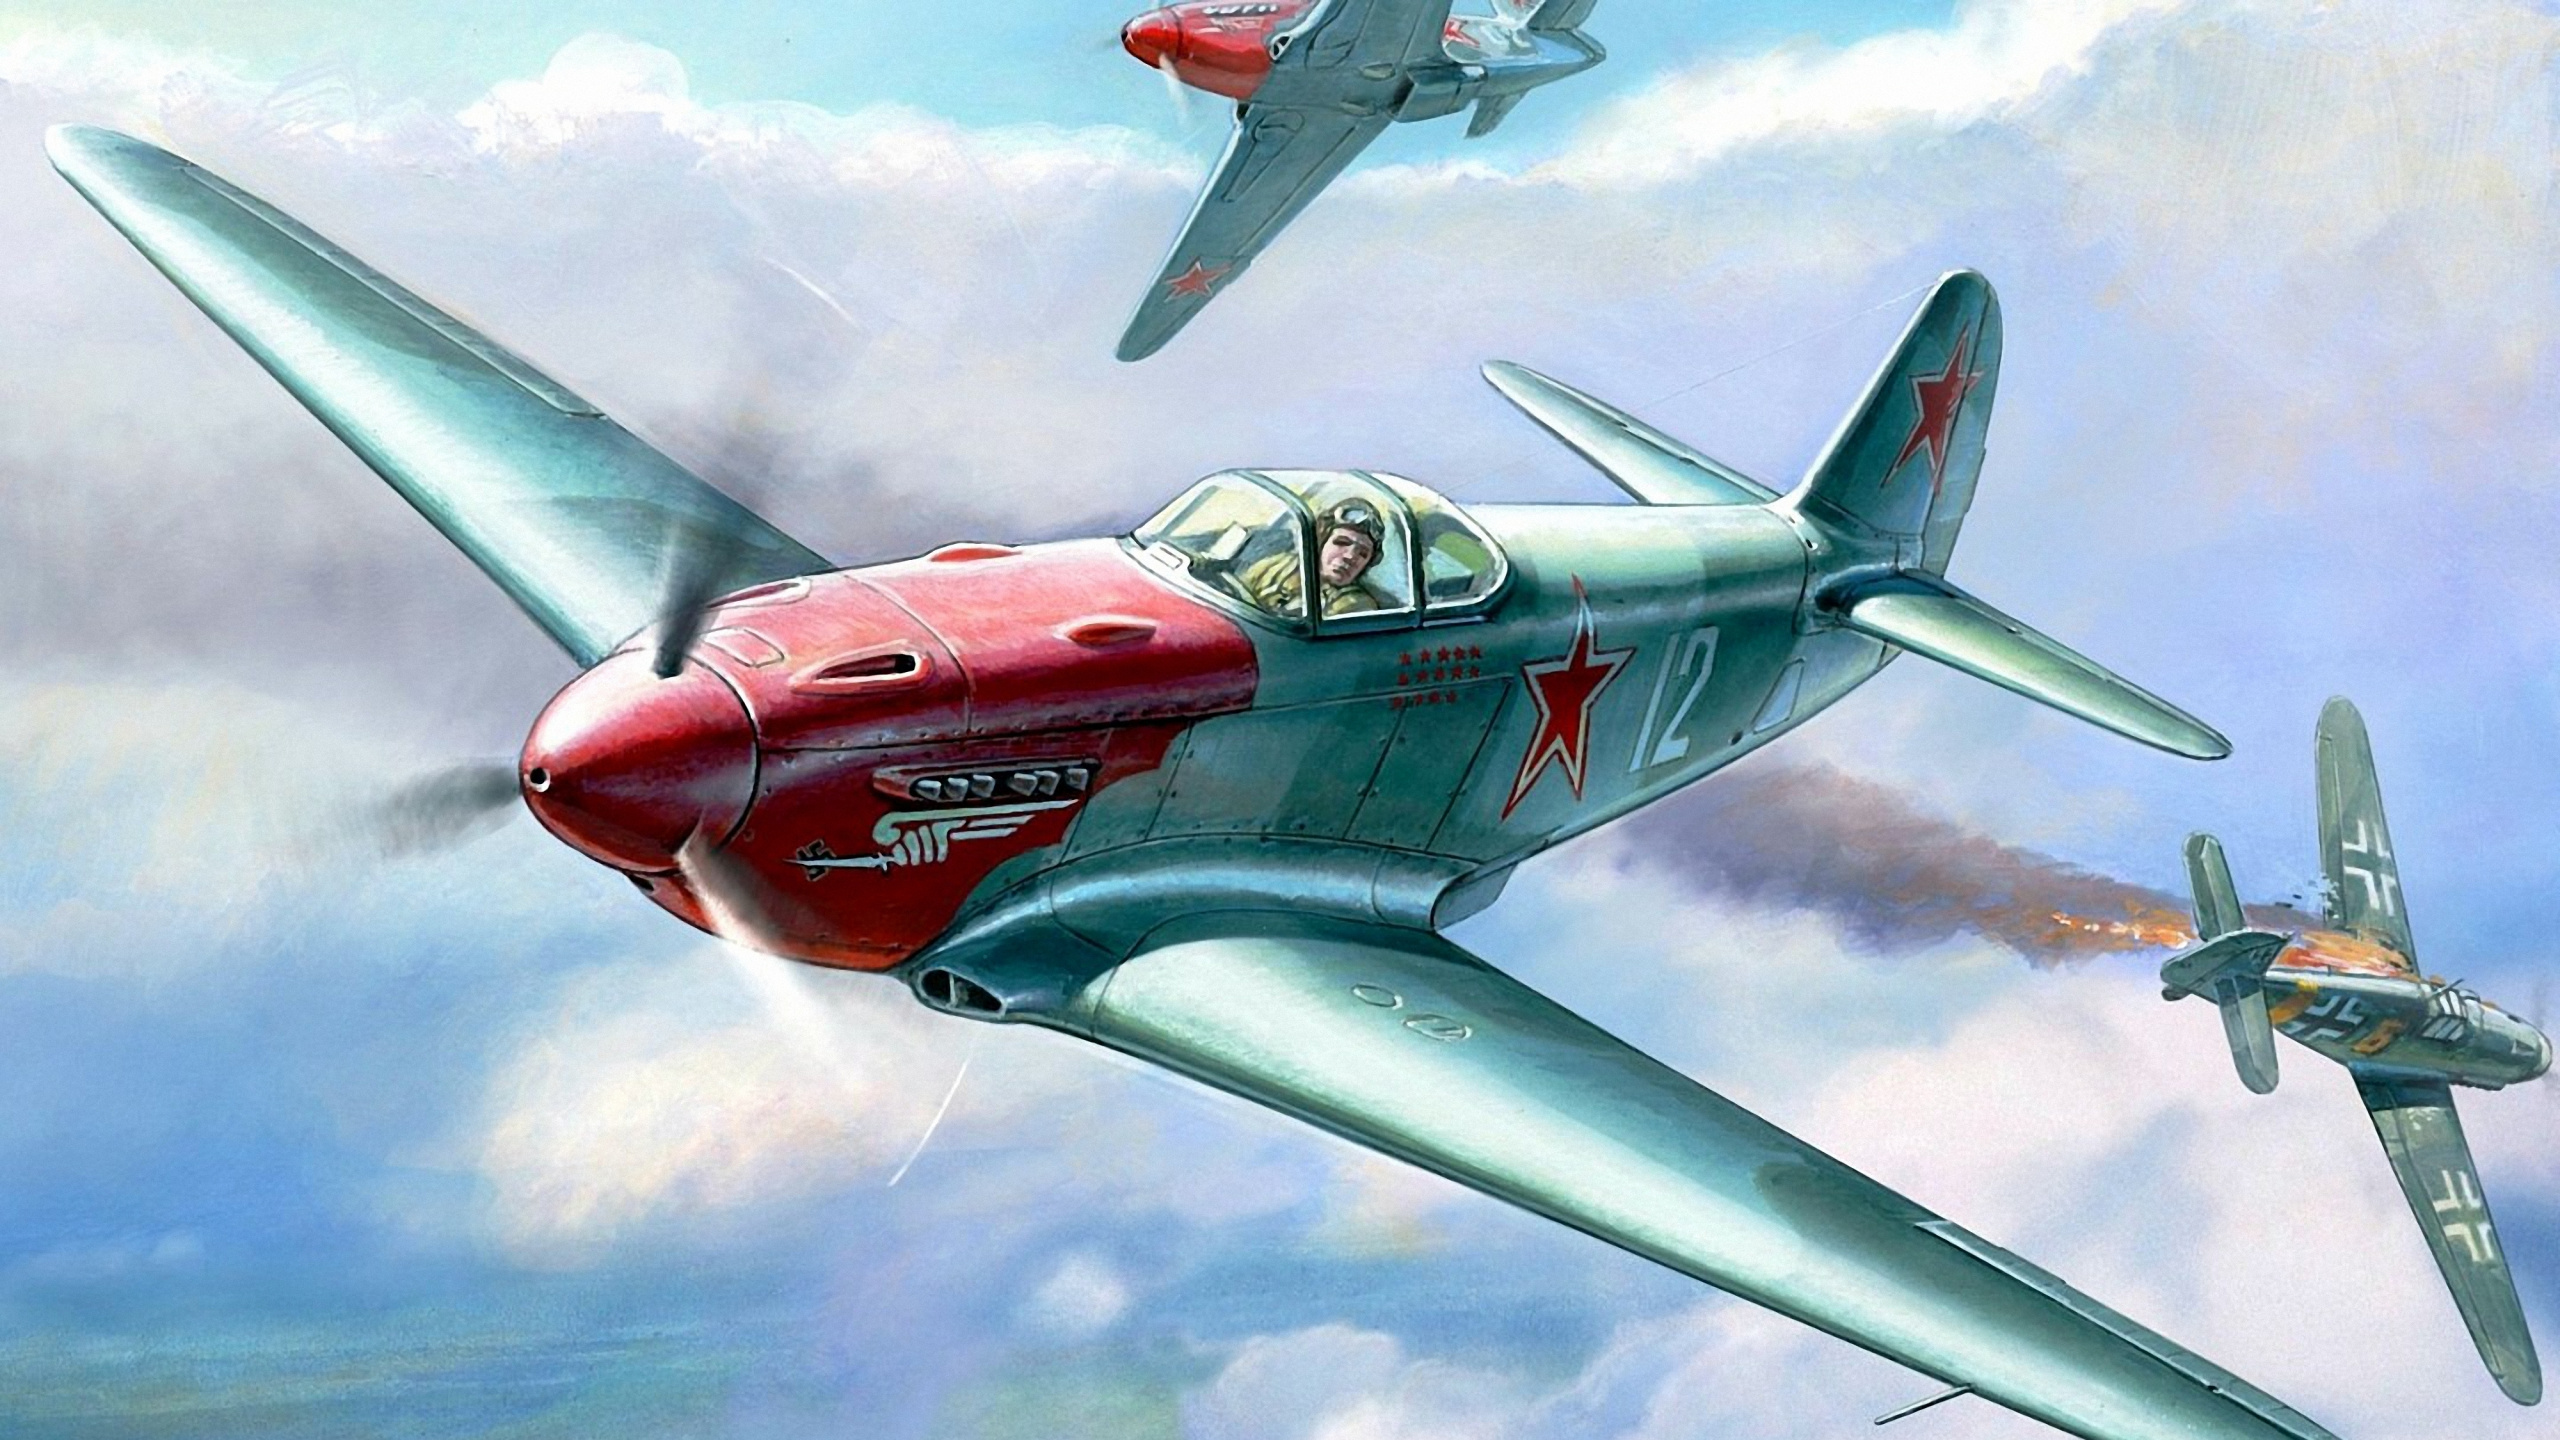 Rotes Und Graues Düsenflugzeug in Der Luft. Wallpaper in 2560x1440 Resolution